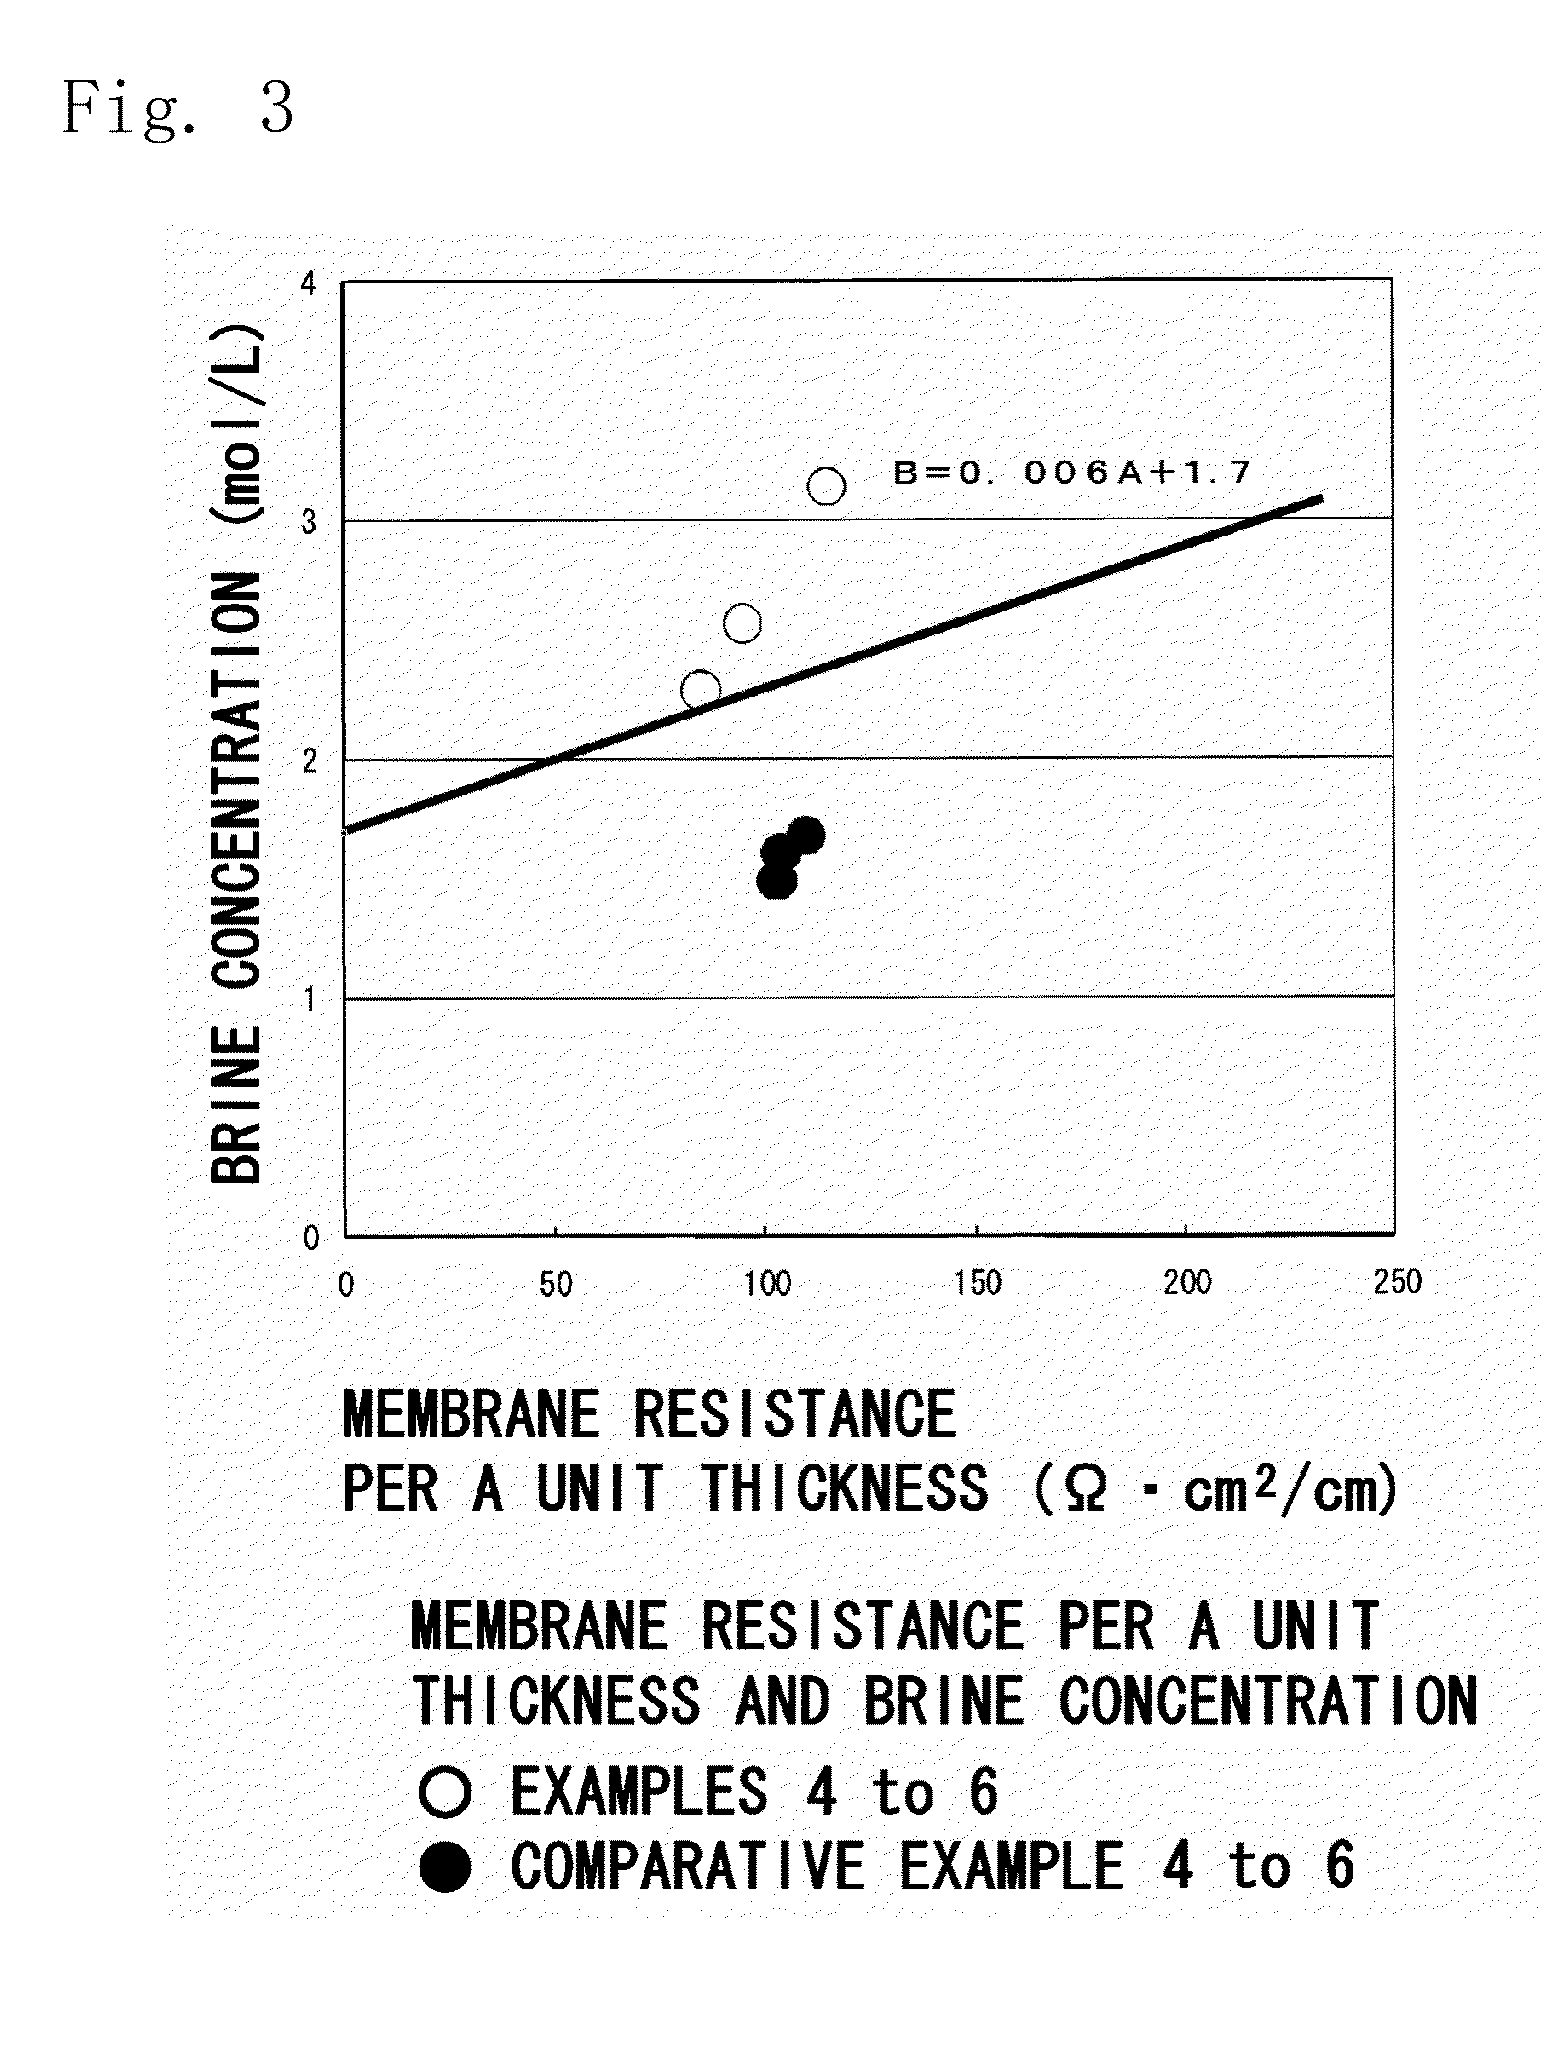 Ion-exchange membrane